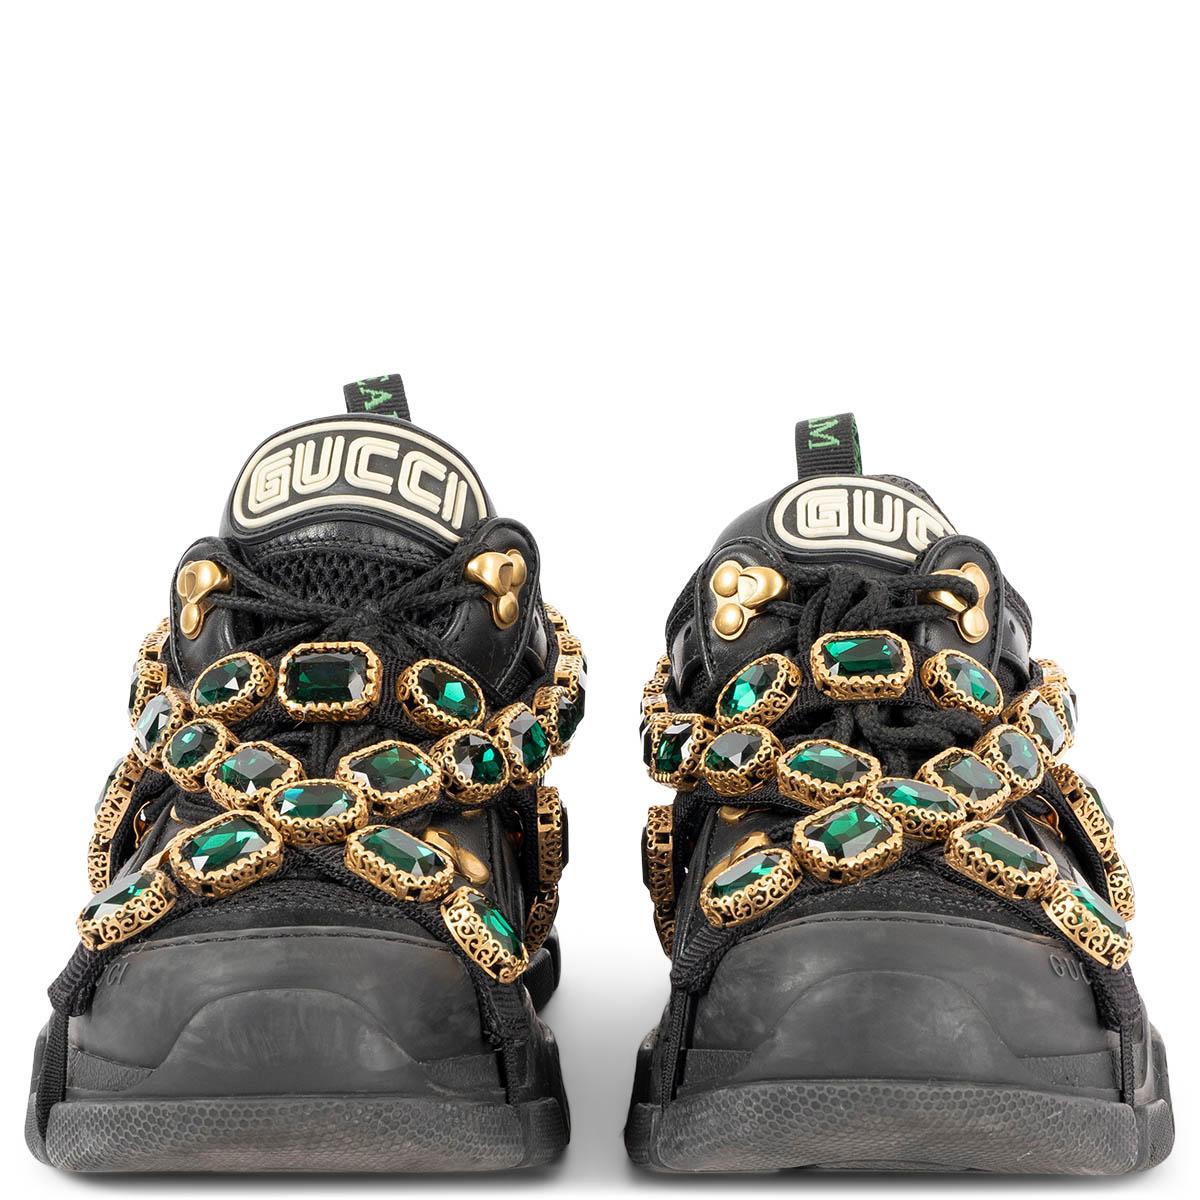 100% authentische Gucci Flashtrek Sneakers aus schwarzem Leder, Wildleder und technischem Gewebe mit Gummistollensohle vom Laufsteg der Herbst/Winter 2018 Kollektion. Glitzernde grüne Kristalle sind auf das abnehmbare, elastische Band gestickt, das